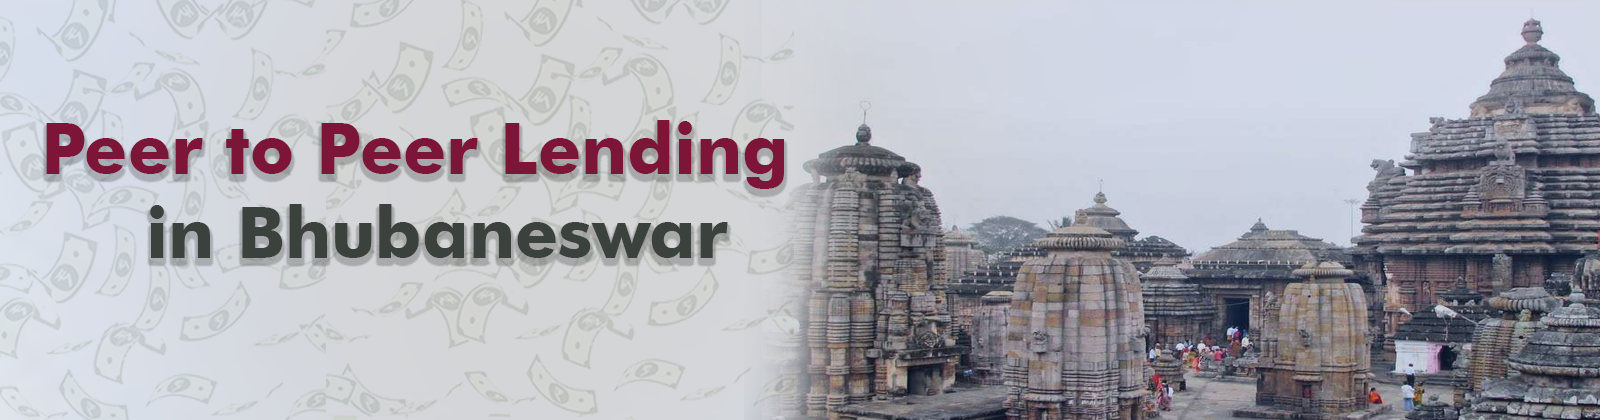 Peer to Peer Lending In Bhubaneswar